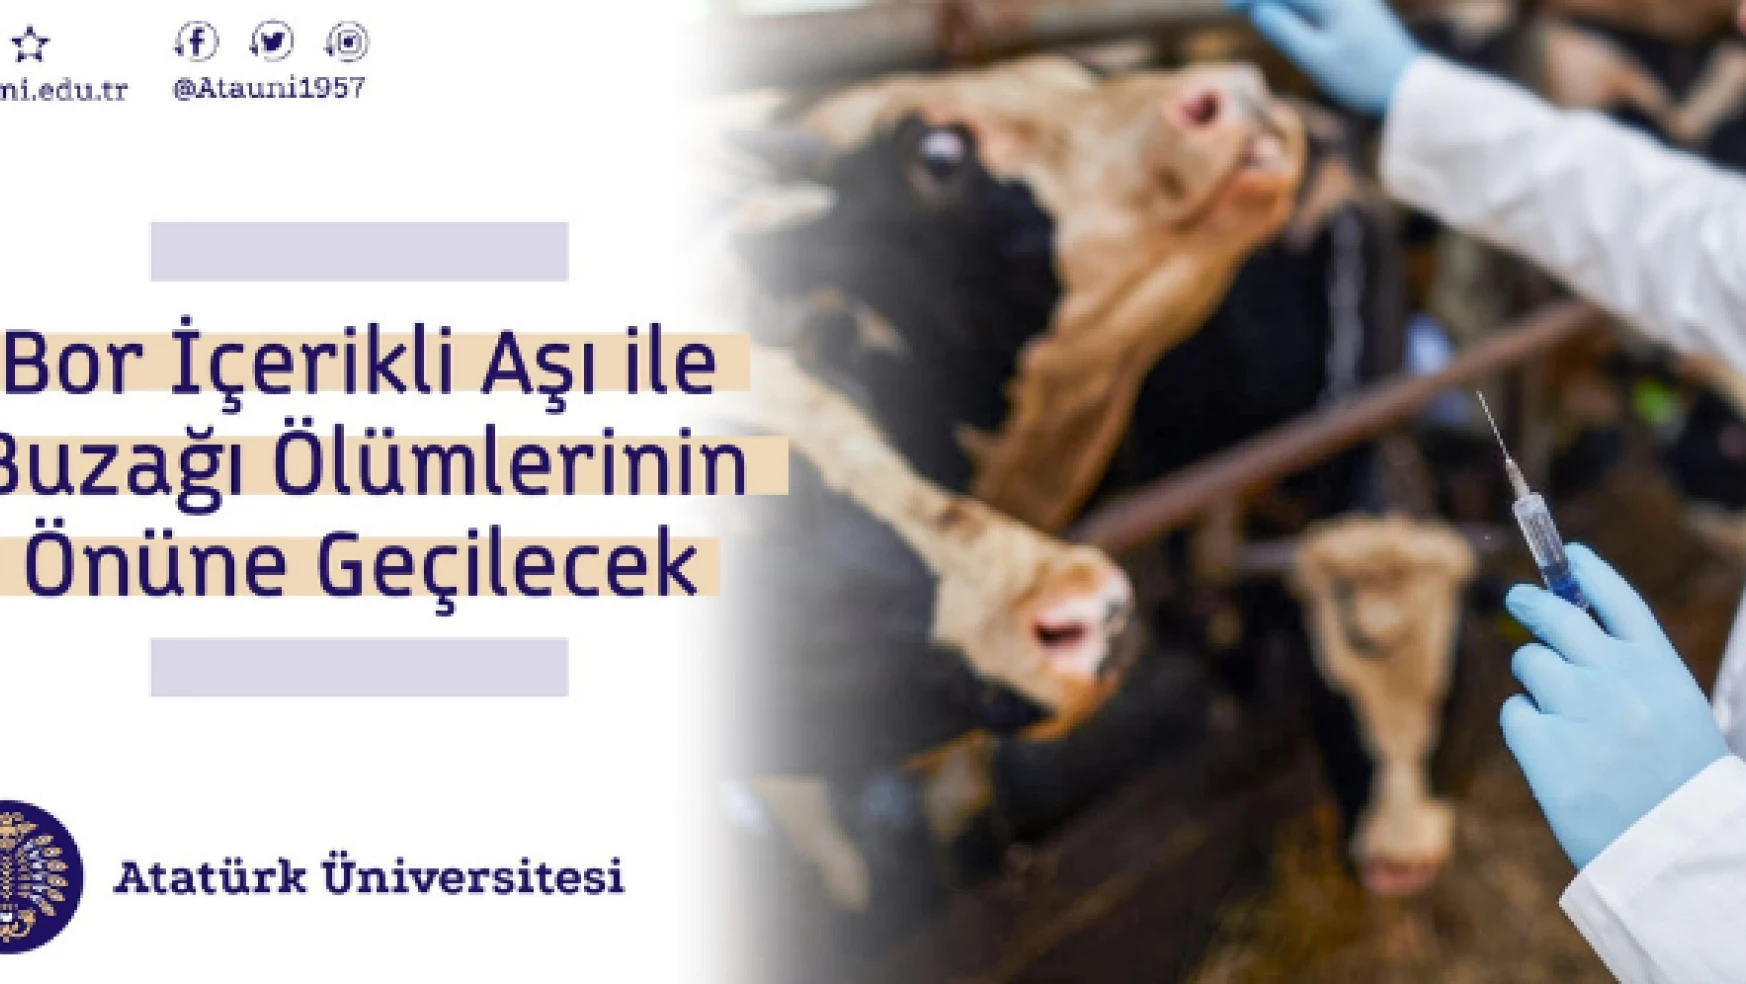 Atatürk Üniversitesi, aşı projesi ile TÜBİTAK'tan destek aldı